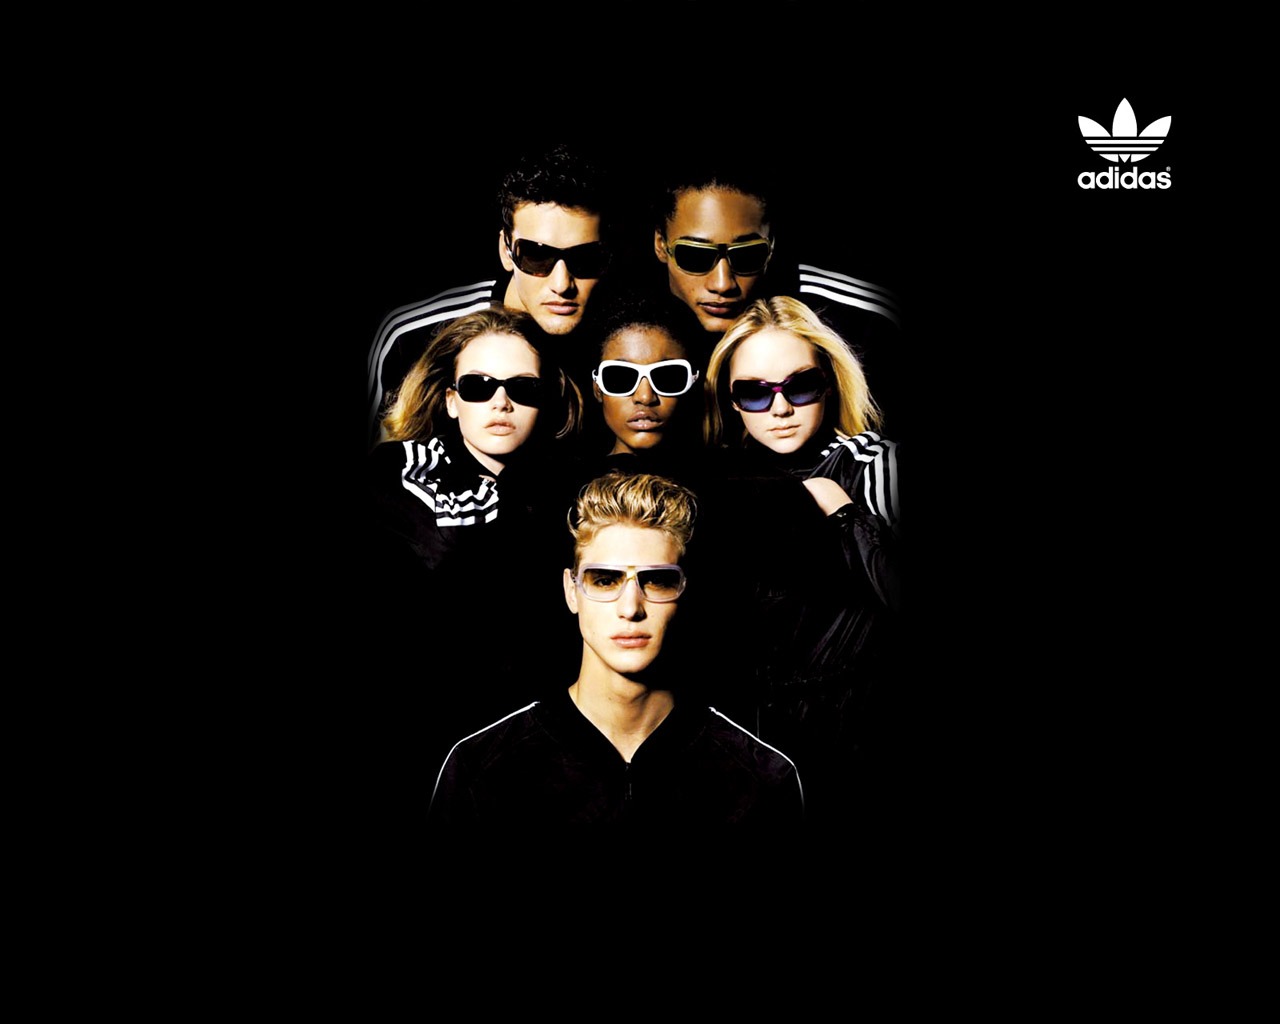 Fond d'écran de la publicité Adidas #14 - 1280x1024